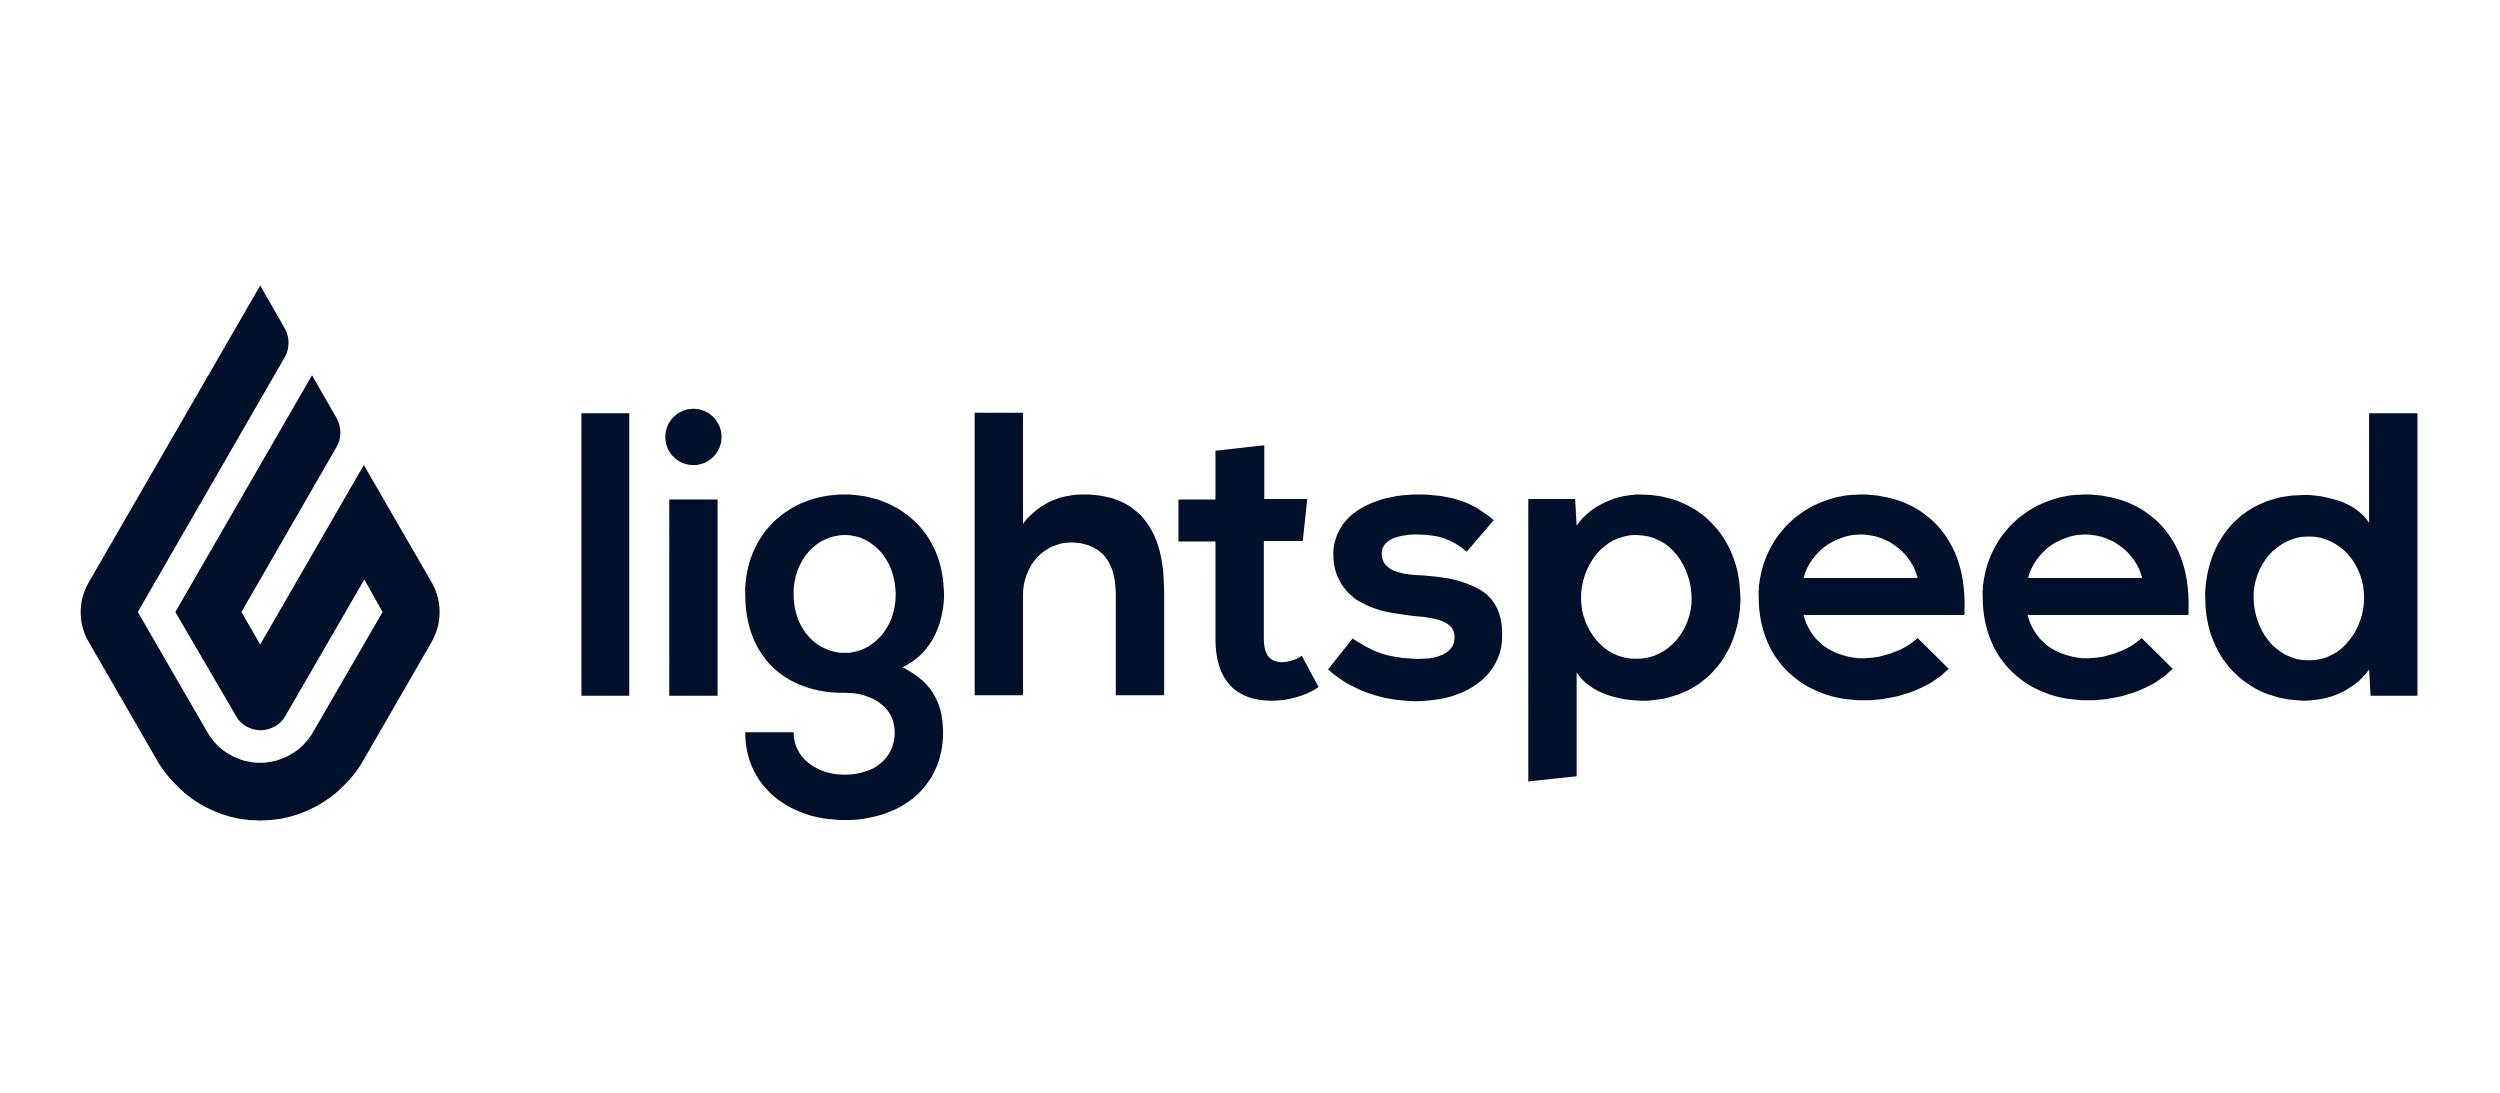 Lightspeed toma el control gracias a los pagos integrados